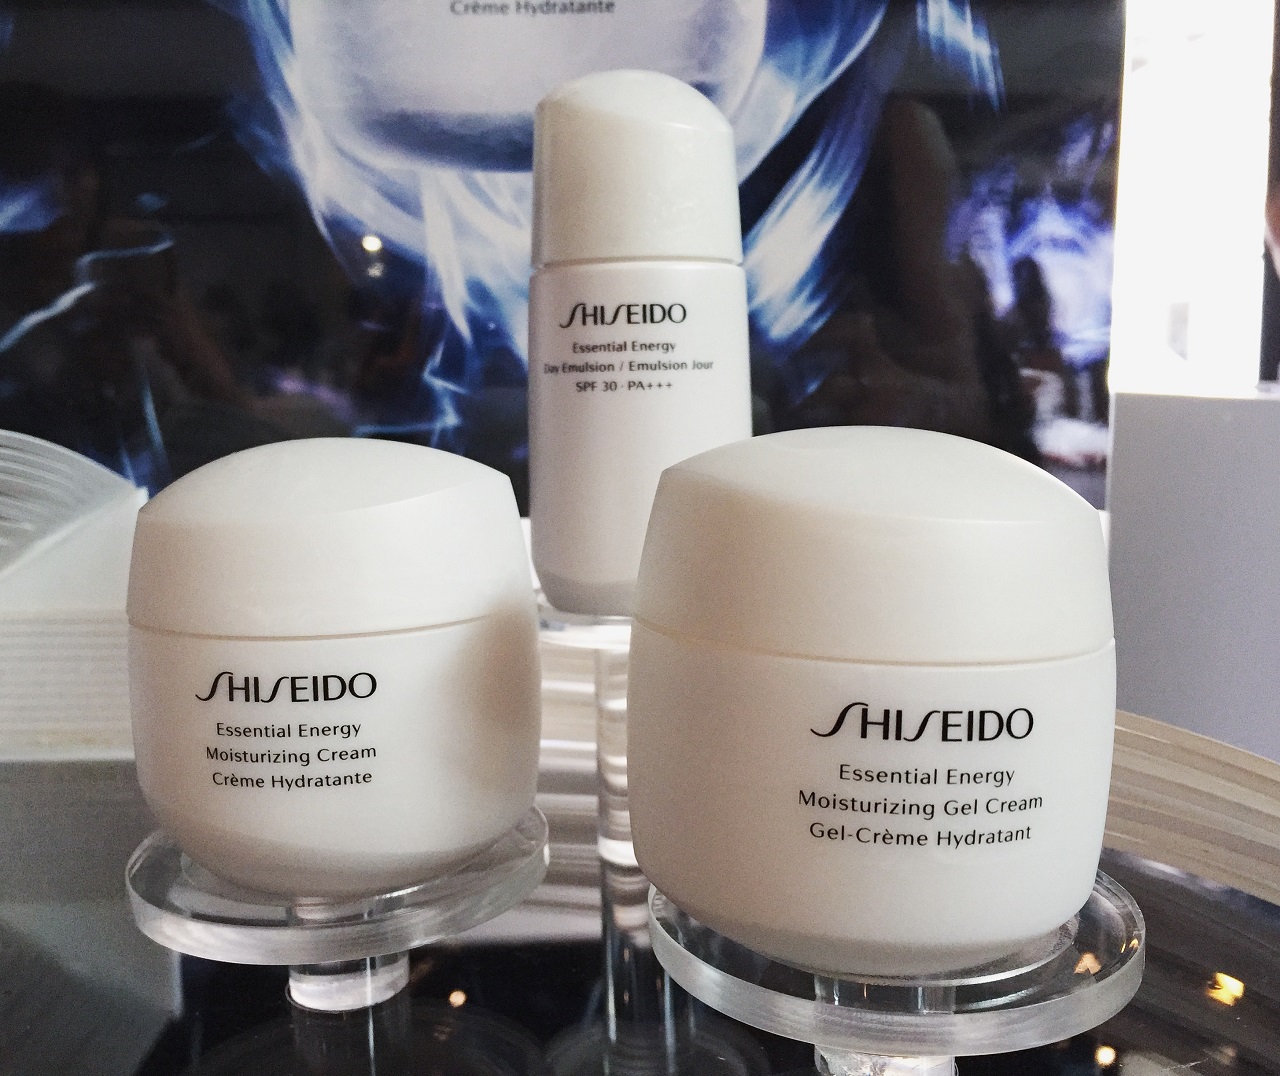 Shiseido energy. Крем Shiseido Essential Energy. Шисейдо Essential Energy Hydrating Cream. Набор шисейдо Essential Energy. Shiseido Essential Energy Moisturizing Cream.